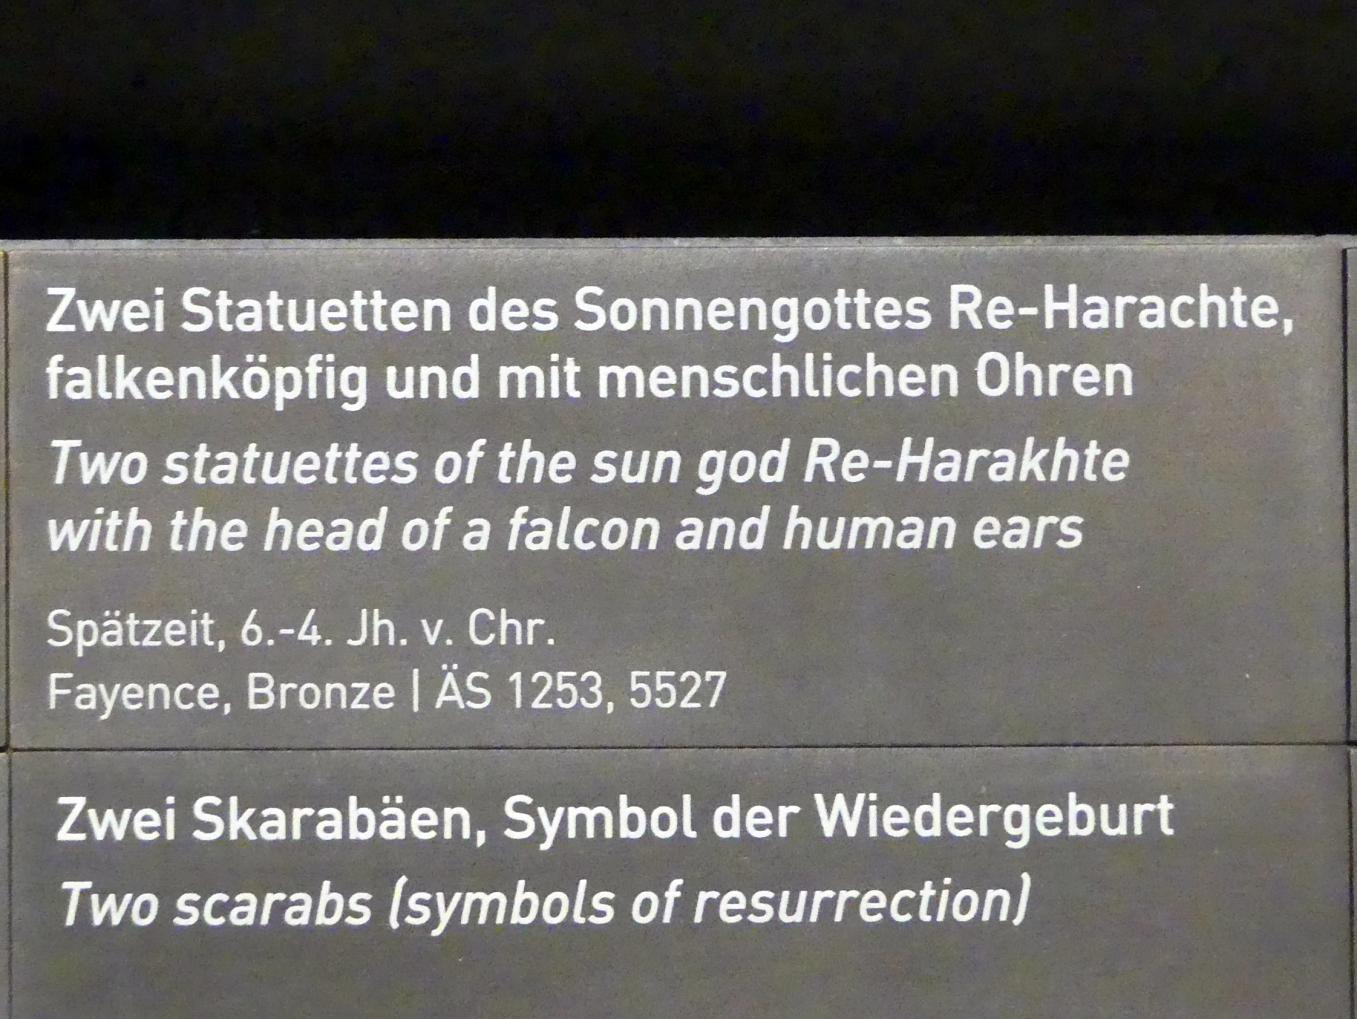 Statuette des falkenköpfigen Sonnengottes Re-Harachte mit menschlichen Ohren, Spätzeit, 360 - 342 v. Chr., 600 - 300 v. Chr., Bild 2/2